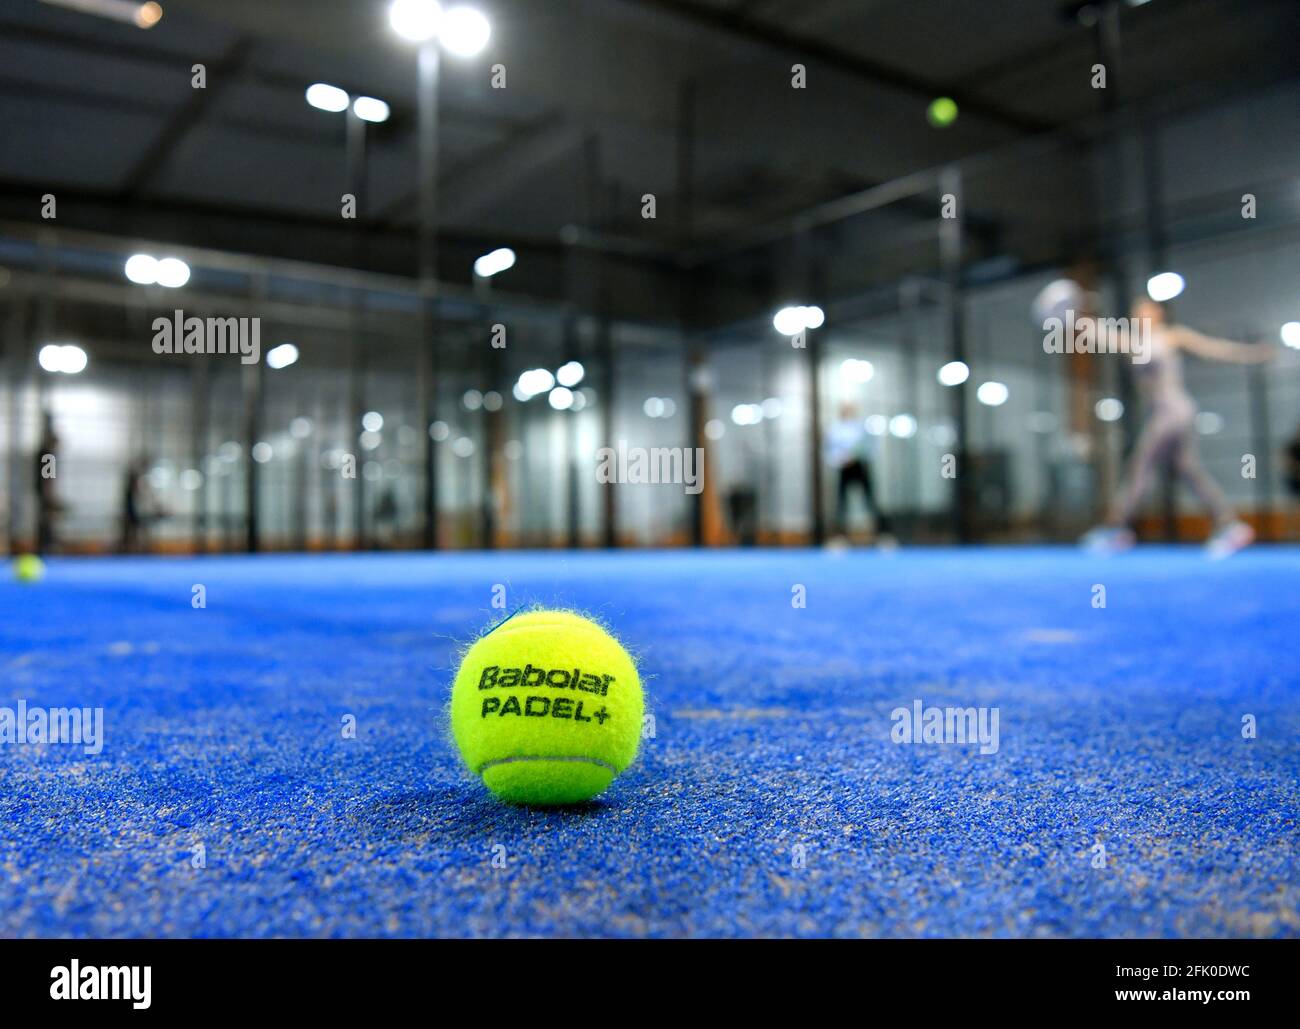 Padel è uno sport di racquet che combina gli elementi di tennis, squash e badminton. Padel è lo sport in più rapida crescita al mondo. Foto: Anders Wiklund / TT / code 10040 Foto Stock